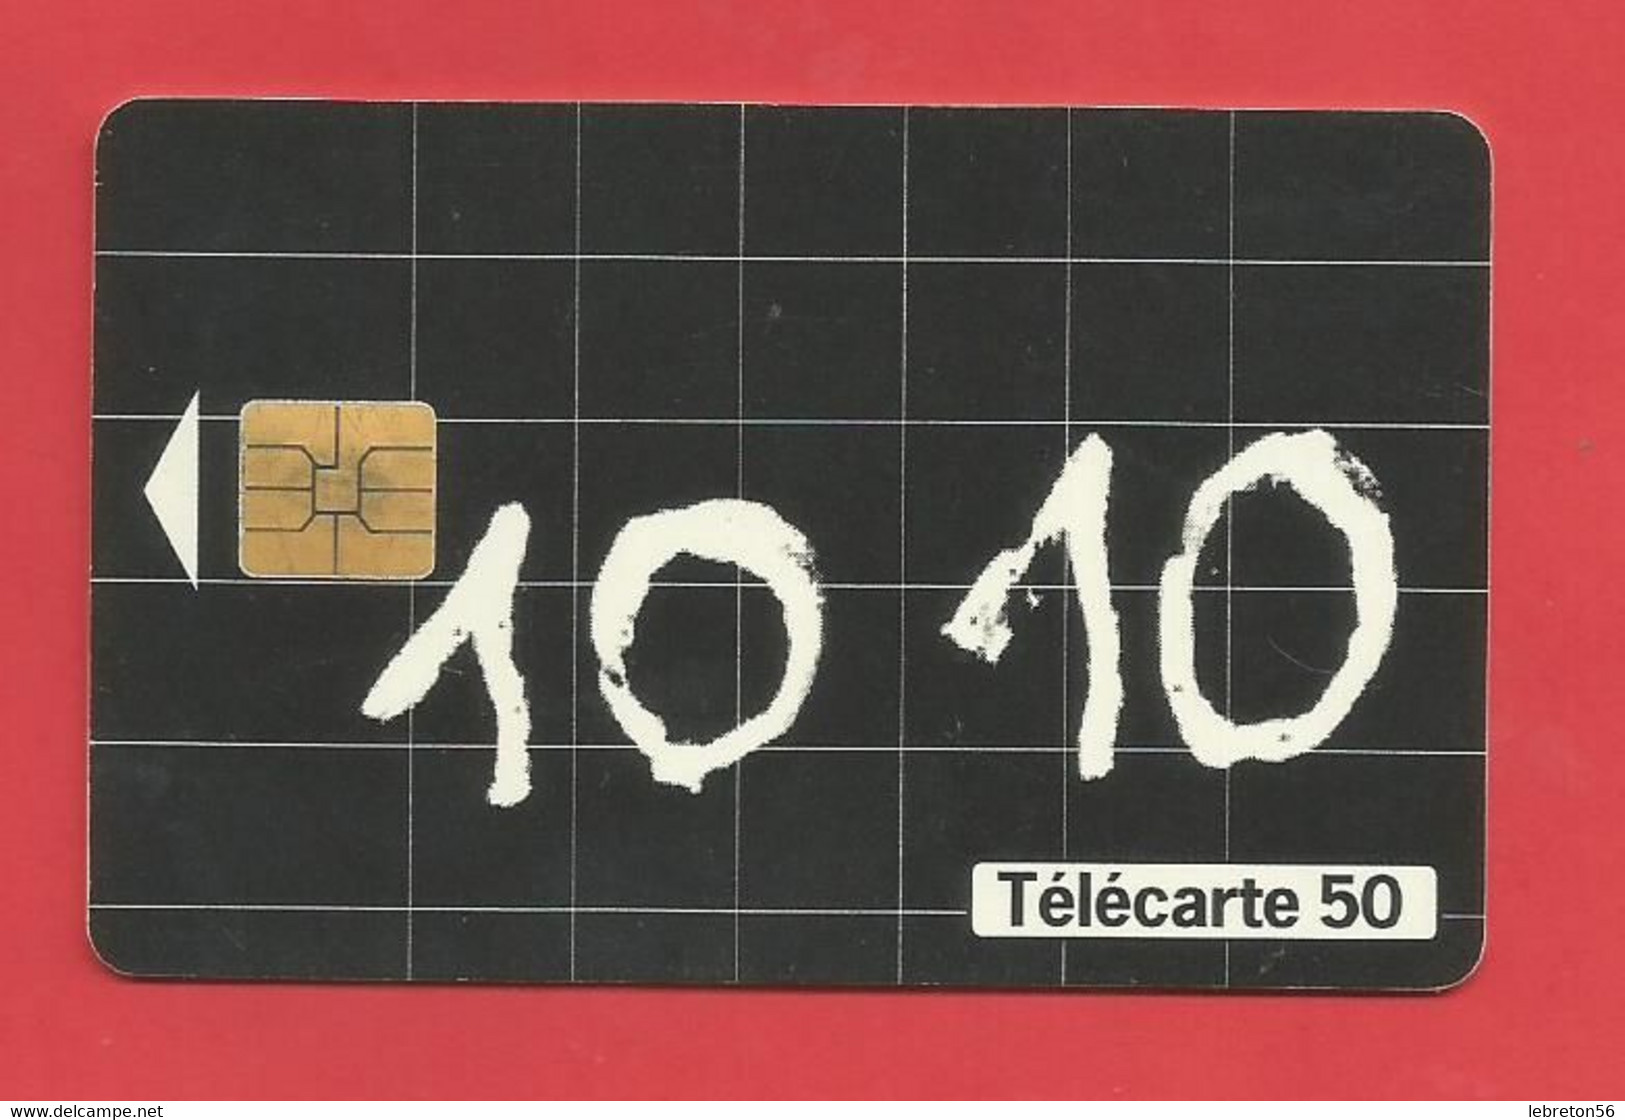 TELECARTE 50  U TIRAGE 1000 000 EX. France Télécom Appelez Le 10 10*---- X 2 Scan - Opérateurs Télécom